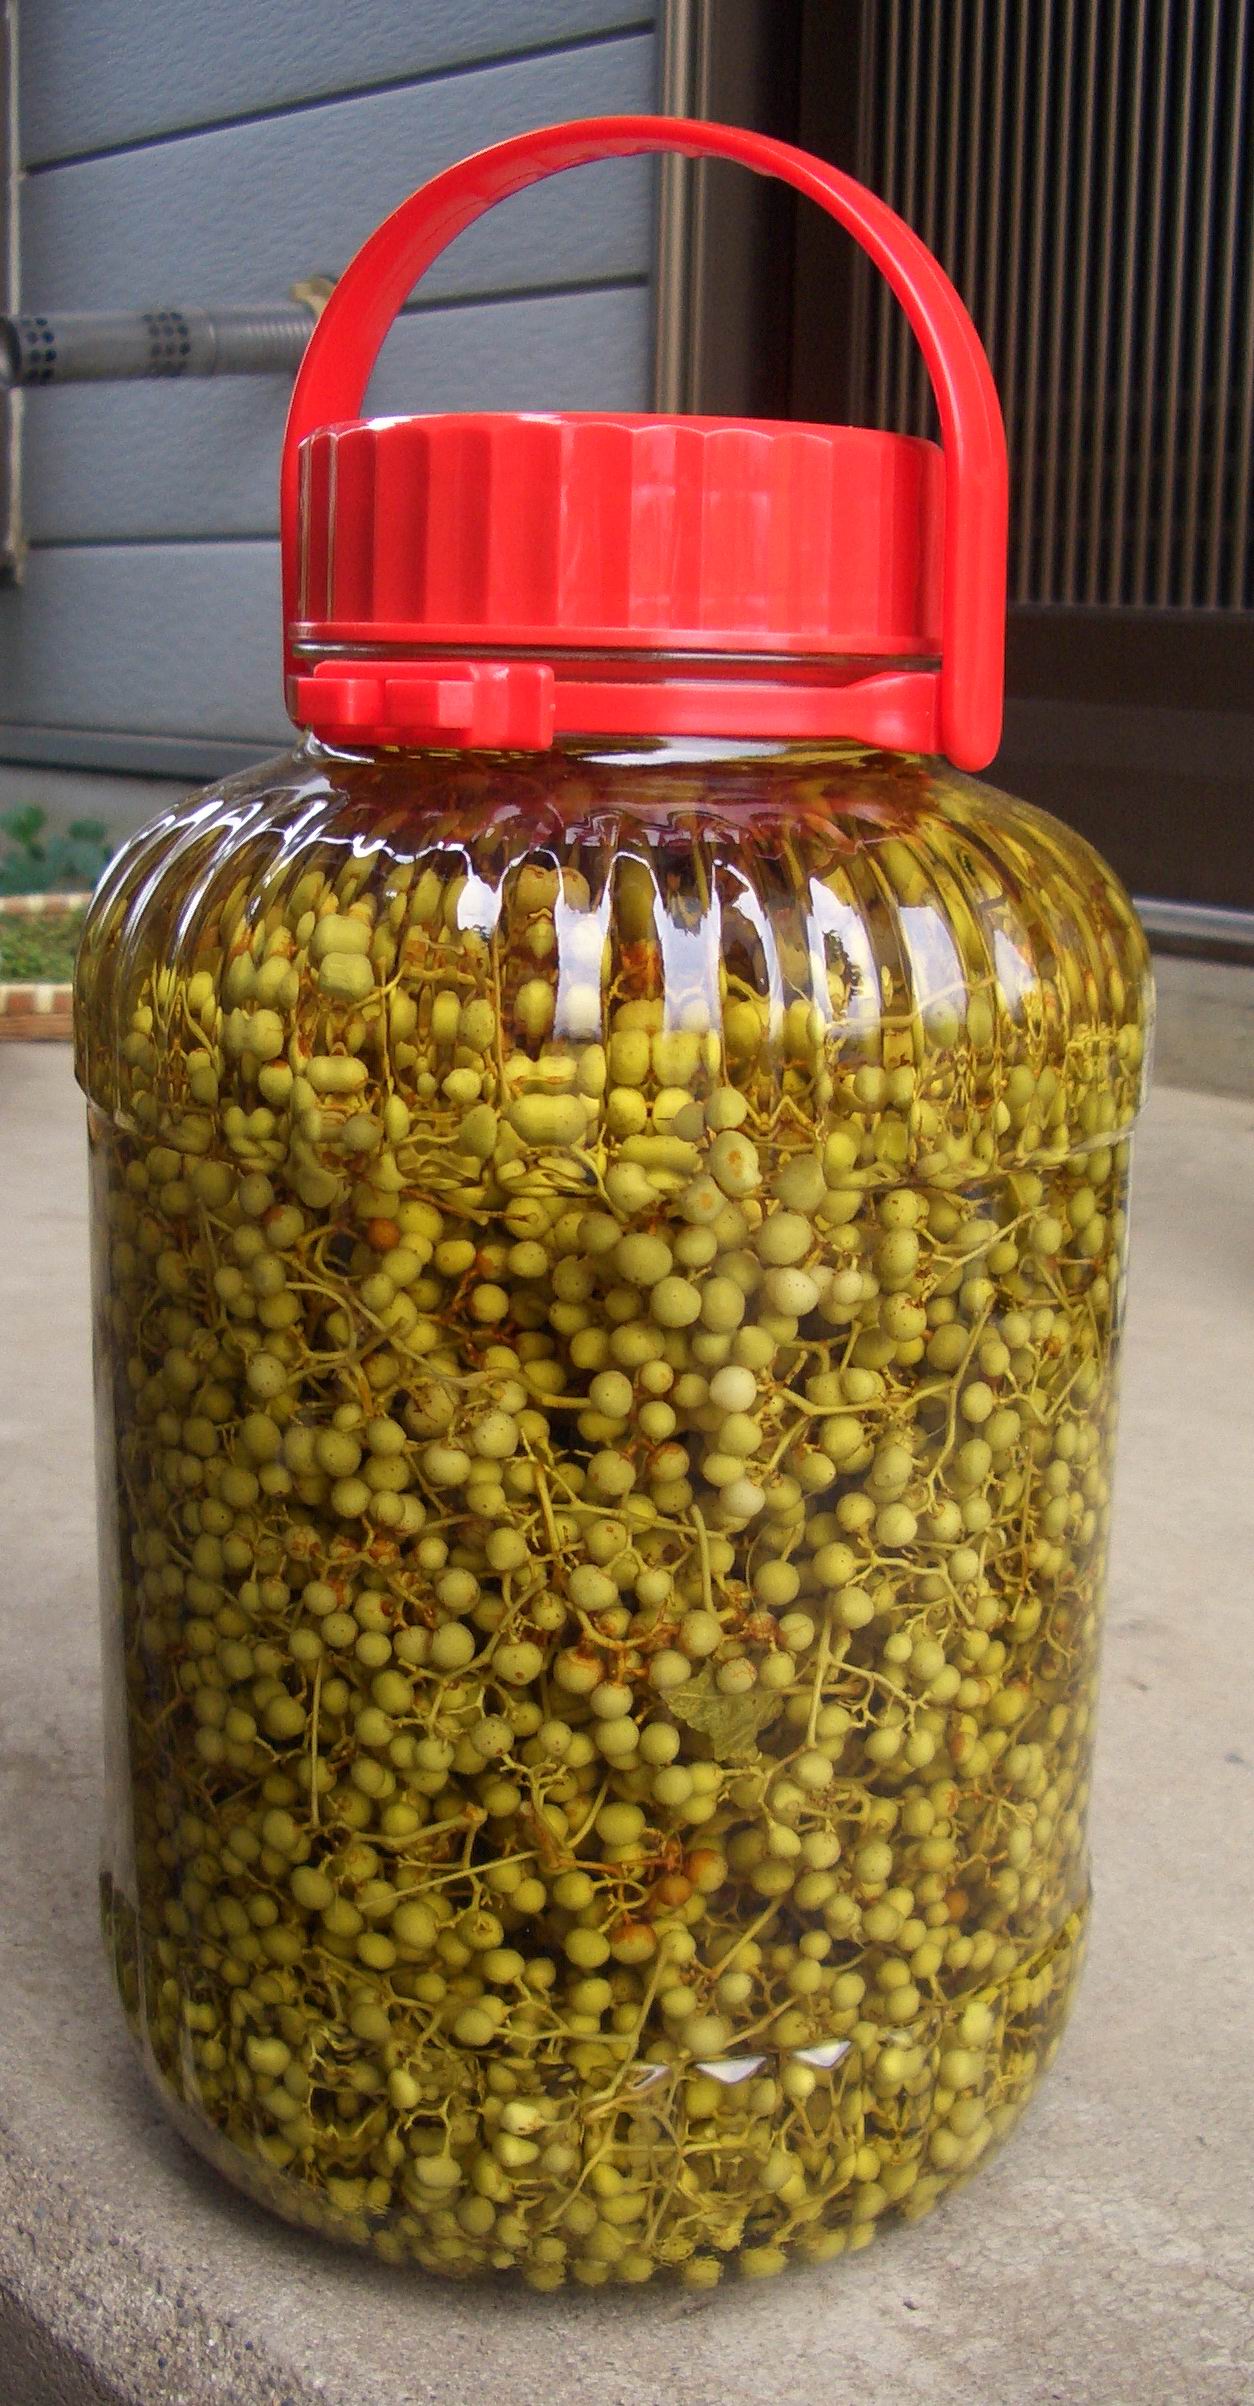 ウマブドウの焼酎漬けのつくり方: 薬草ウマブドウの効能と利用法・栽培法